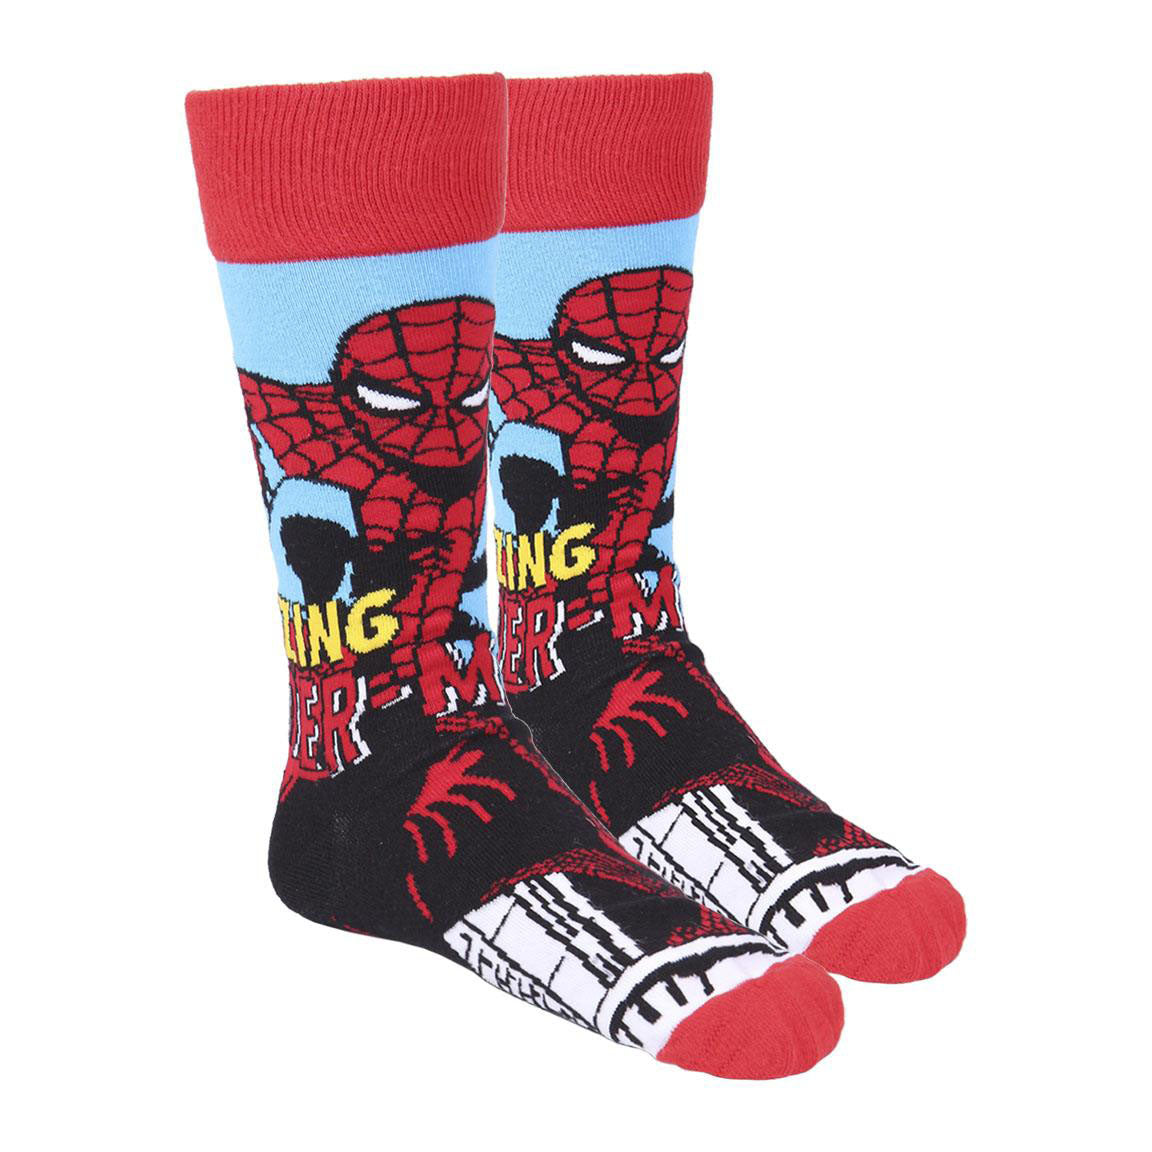 3 ζευγάρια κάλτσες Marvel - Avengers